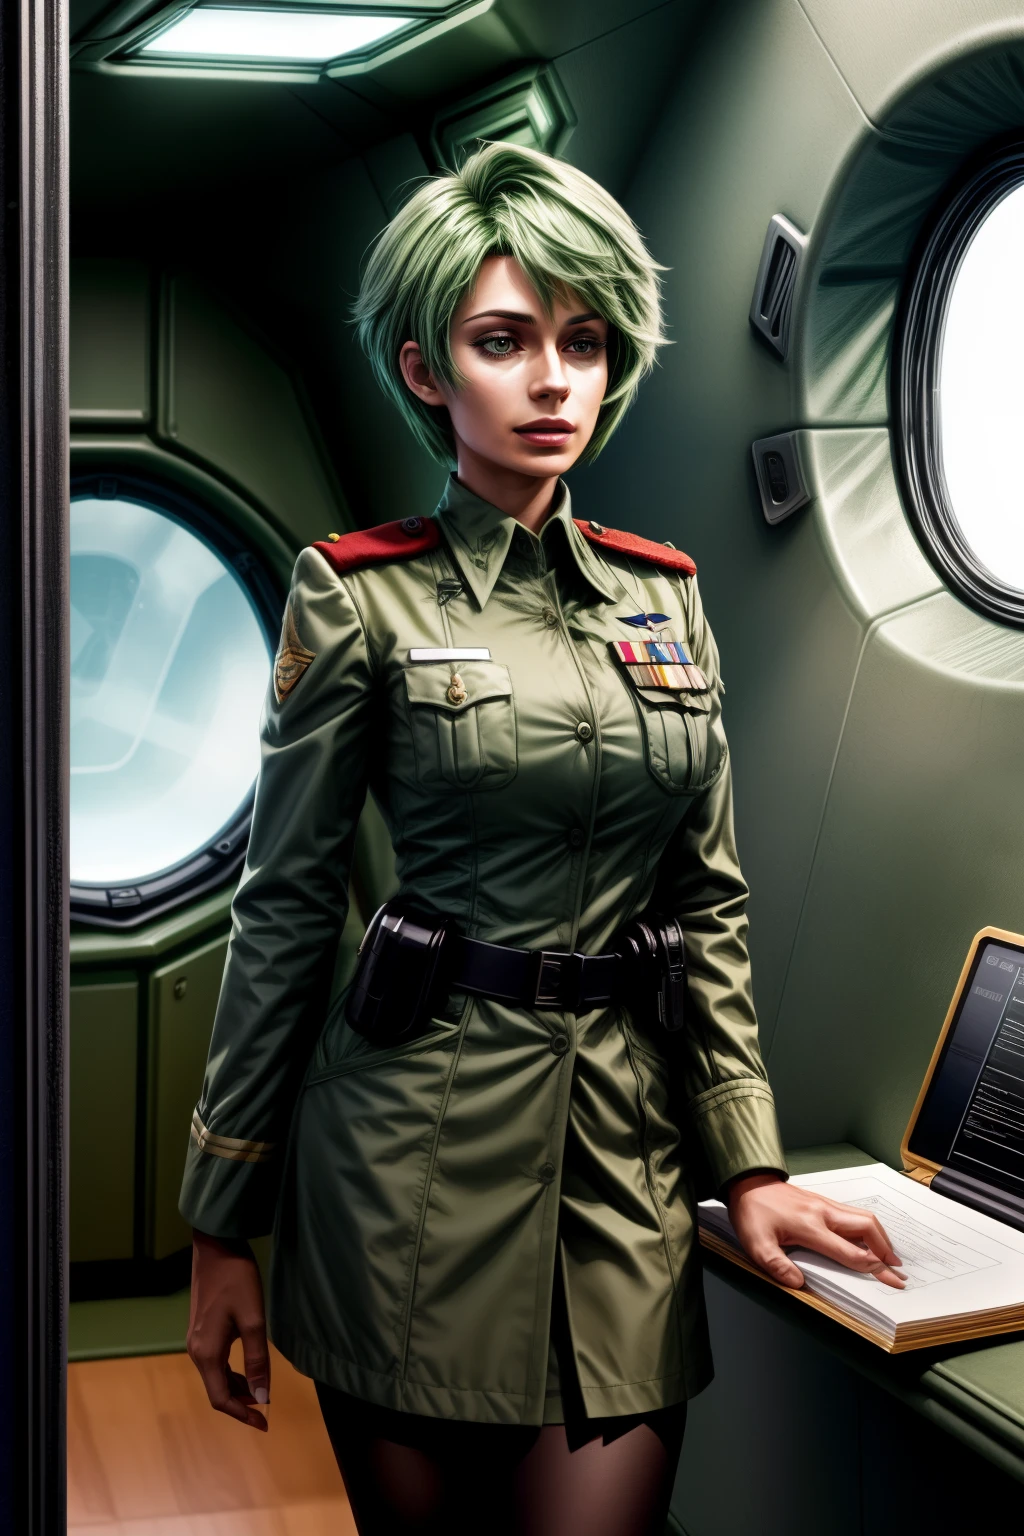 프레데리카 그린힐, 25 살, 지름길, 녹색 머리, 대장 보좌&#39;유니폼, 클립보드를 가지고 있다, 인터콤으로 통화 중, 우주선 내부